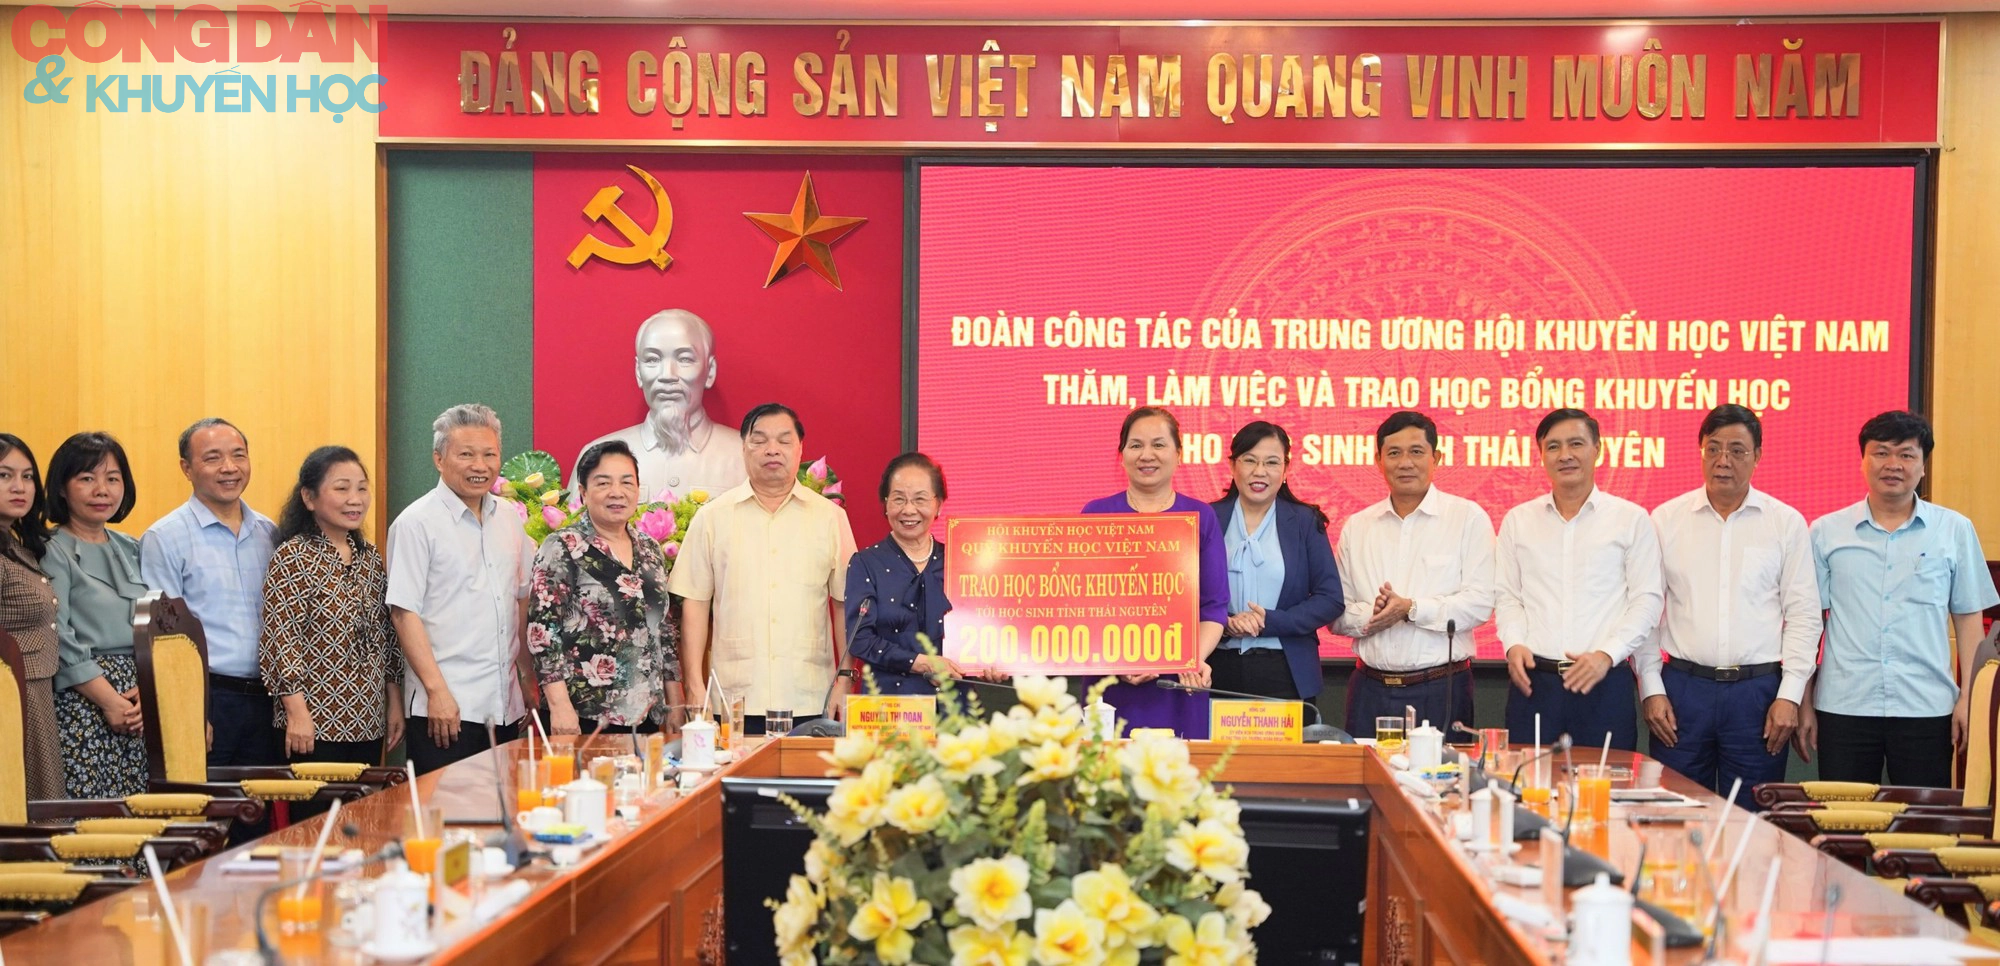 Trung ương Hội Khuyến học Việt Nam trao học bổng khuyến học tại Thái Nguyên - Ảnh 4.